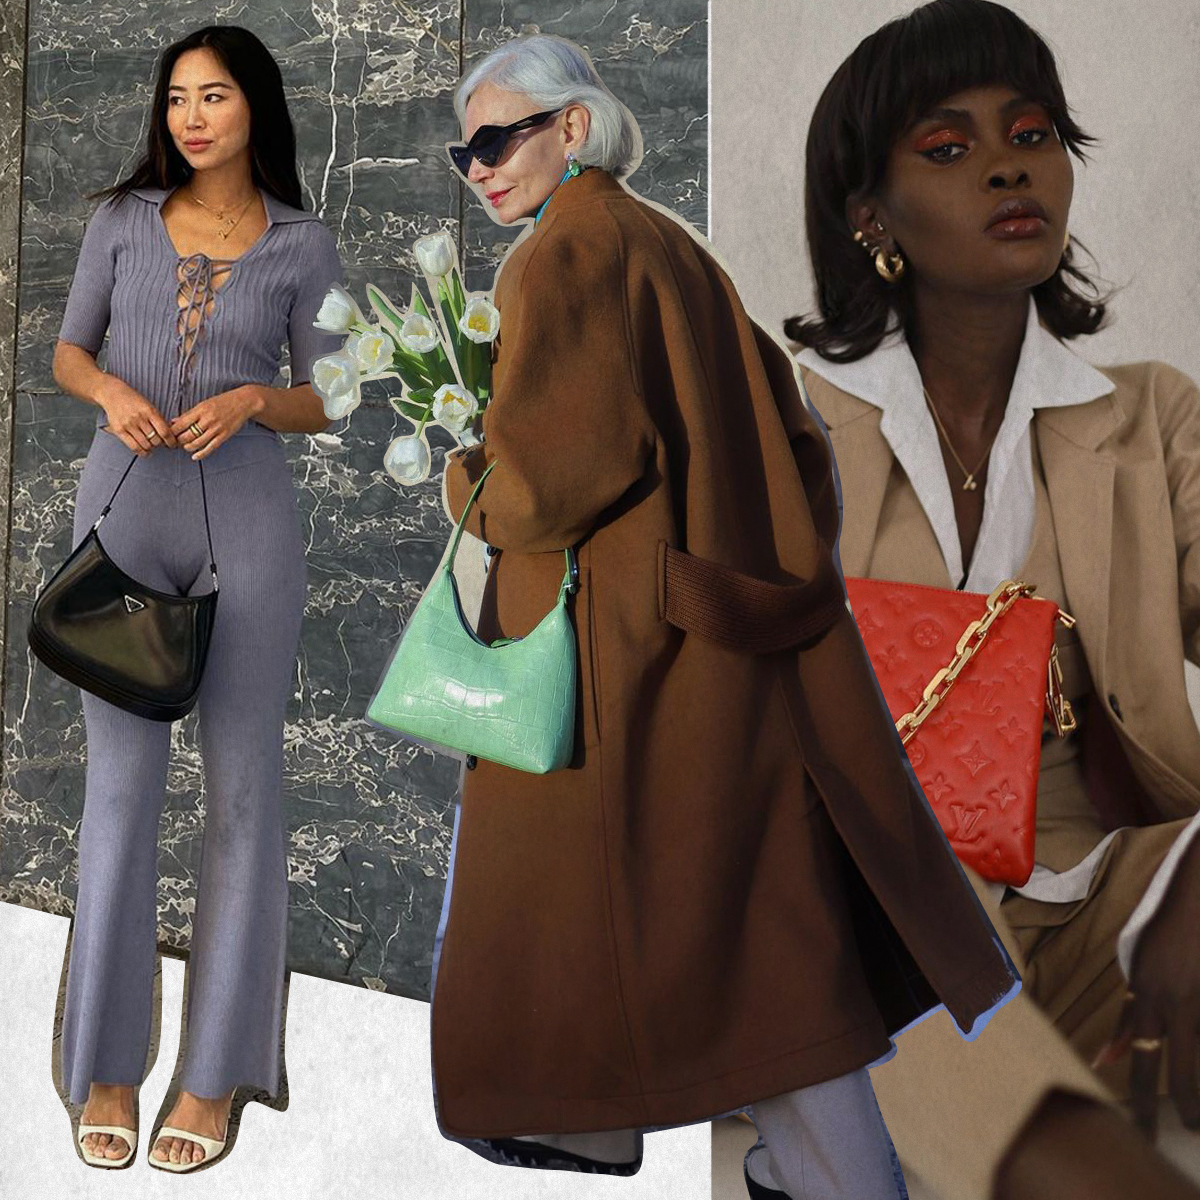 56 Fashion - Bags ideas  fashion bags, bags, bags designer